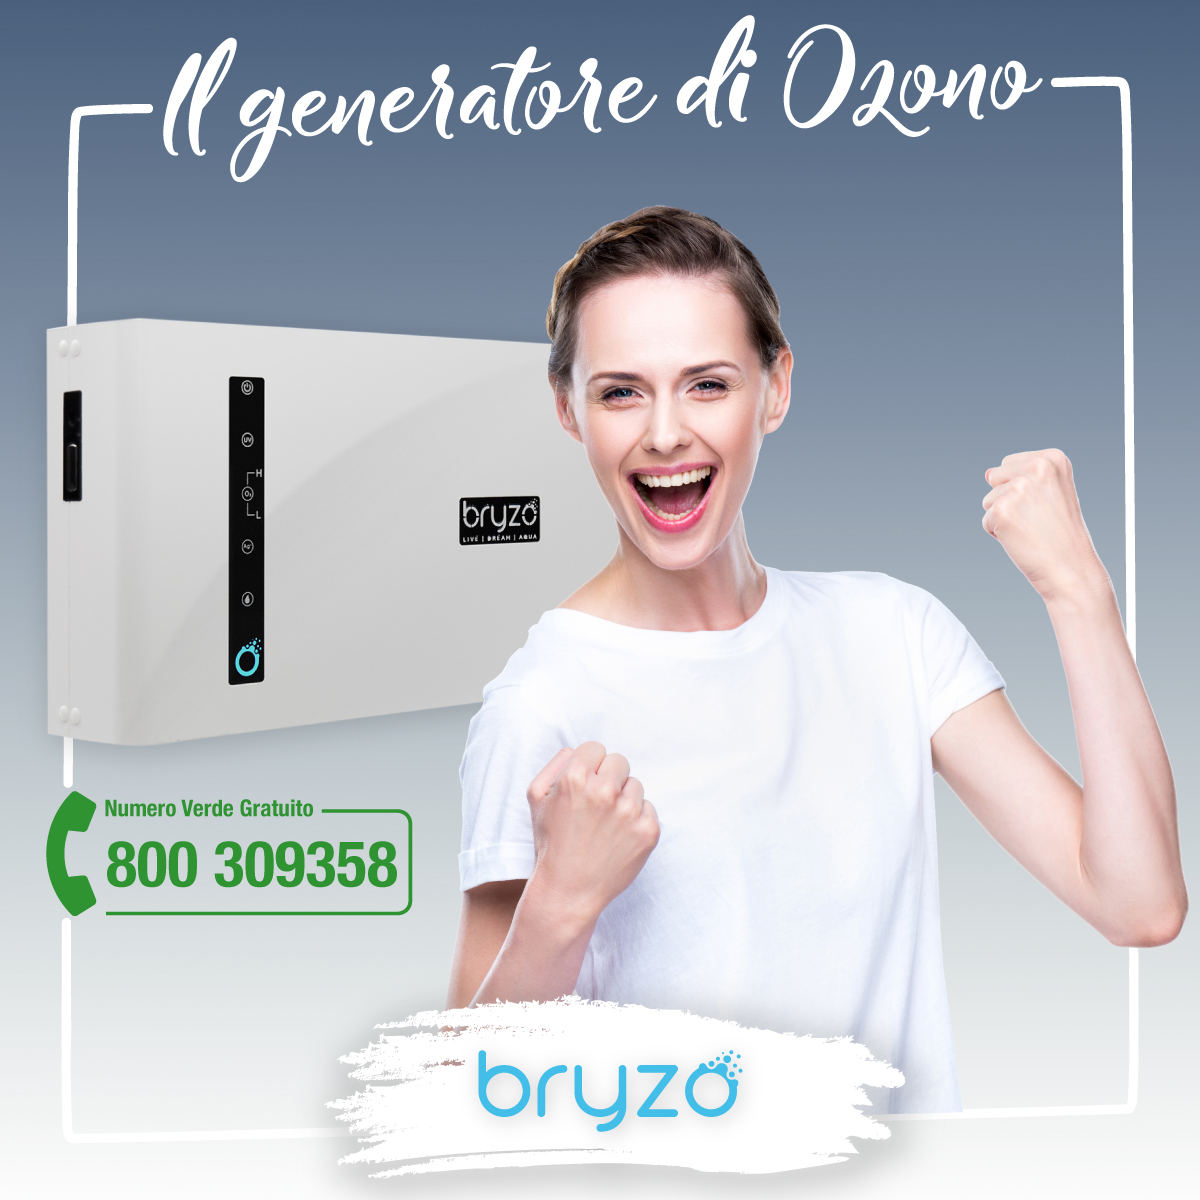 Bryzo generatore ozono lavatrice